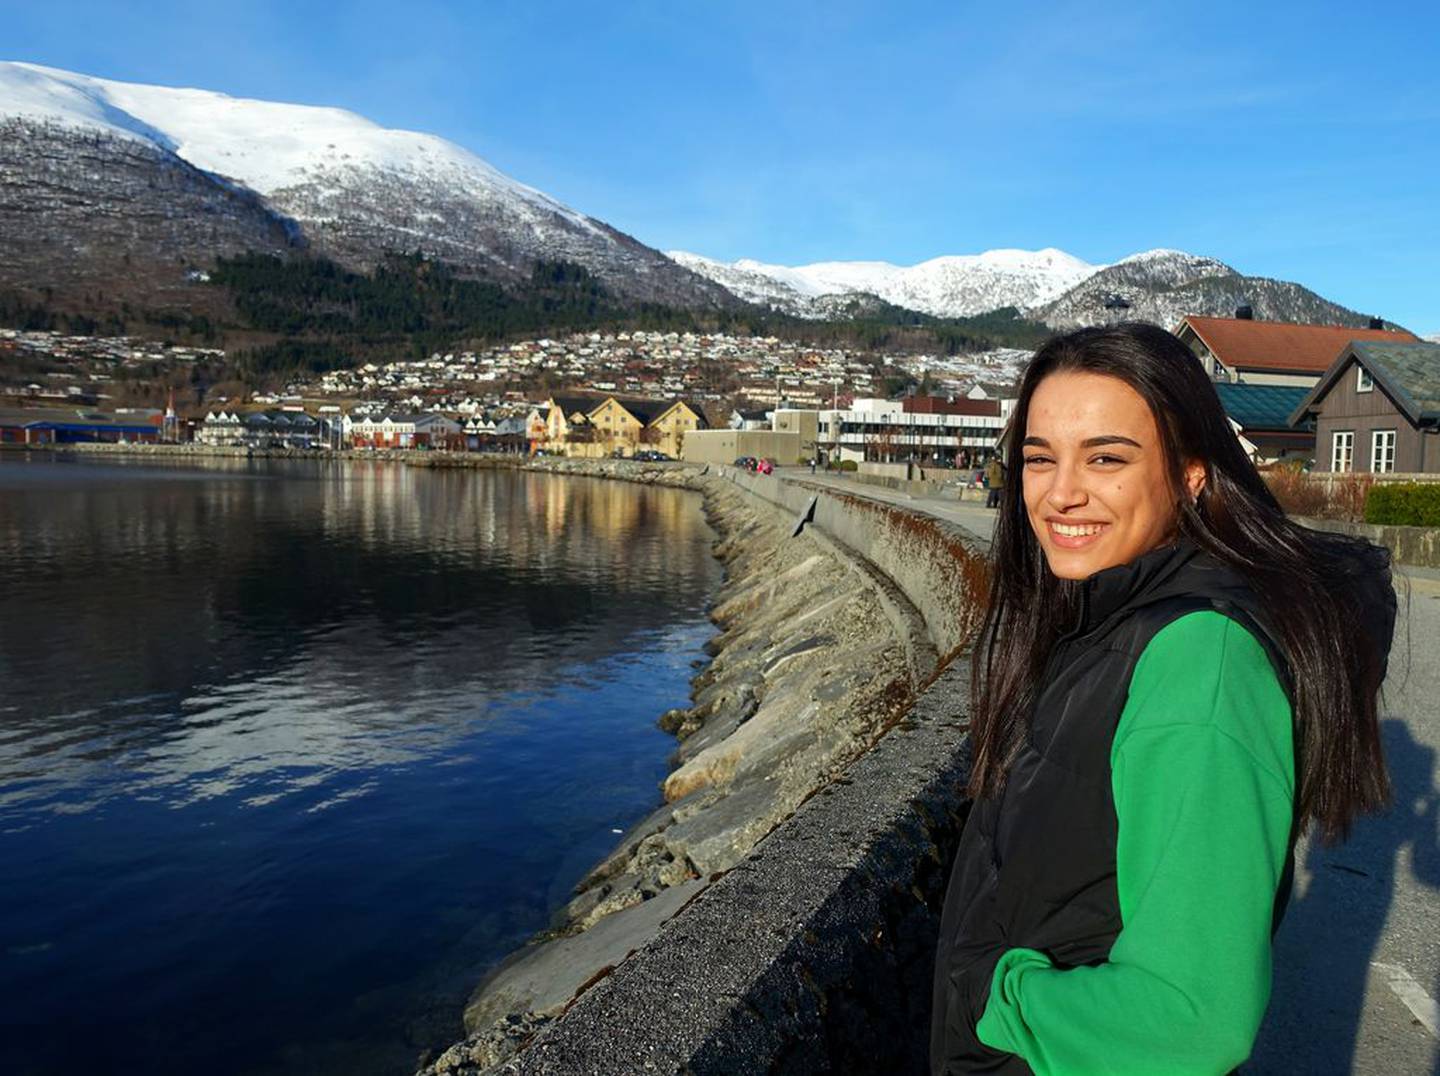 574 enslige mindreårige asylsøkere kom til Norge fra Syria i 2015. Raghad Shaar var en av dem. Hun flyktet med storebroren da hun var 13 år. Nå bor hun i Nordfjordeid.

Foto: Anne Myklebust Odland/FriFagbevegelse